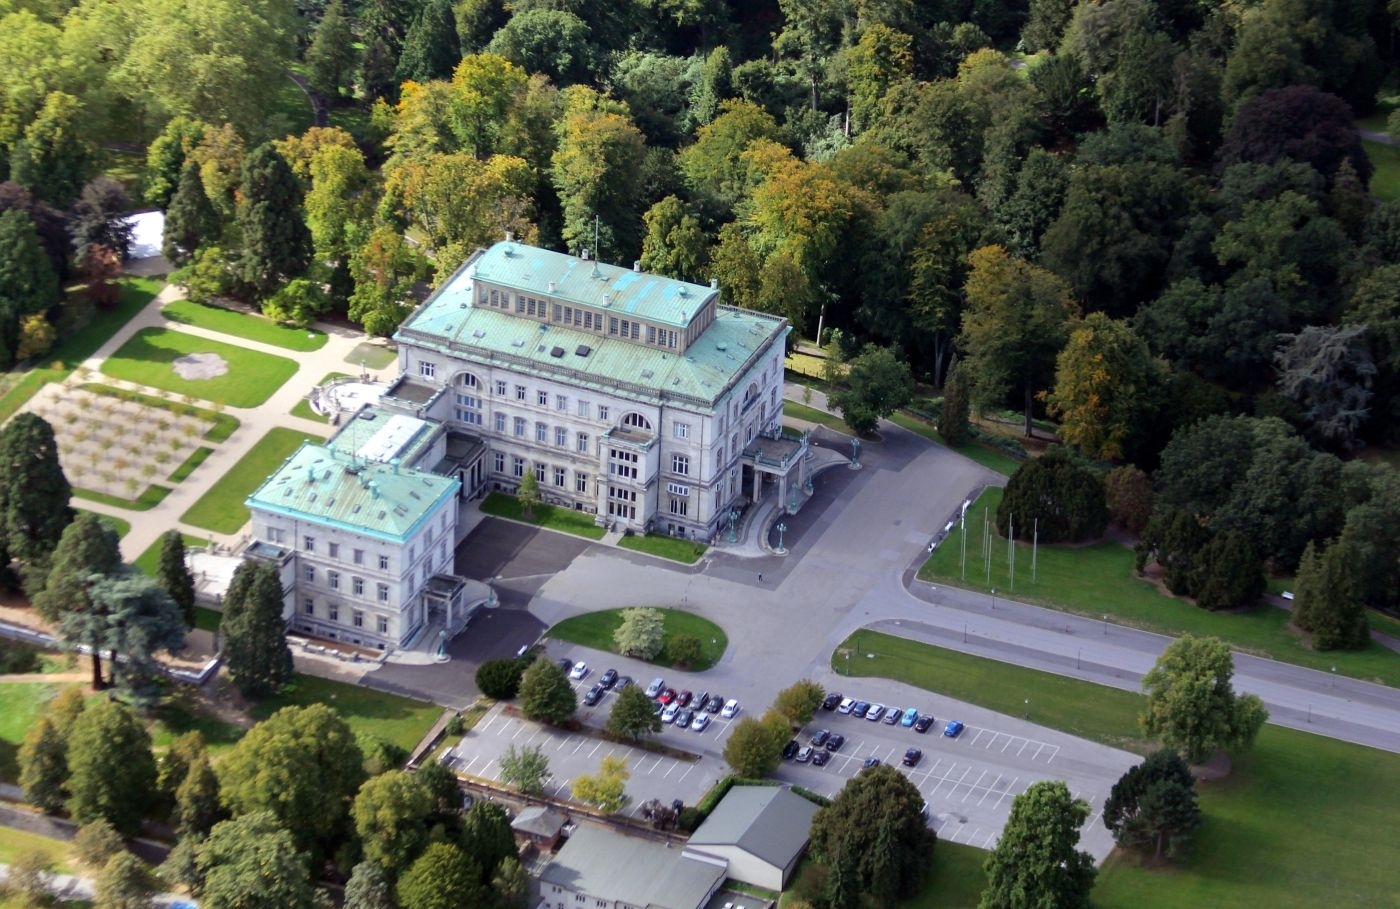 Luftbild der Krupp Villa-Hügel in Essen